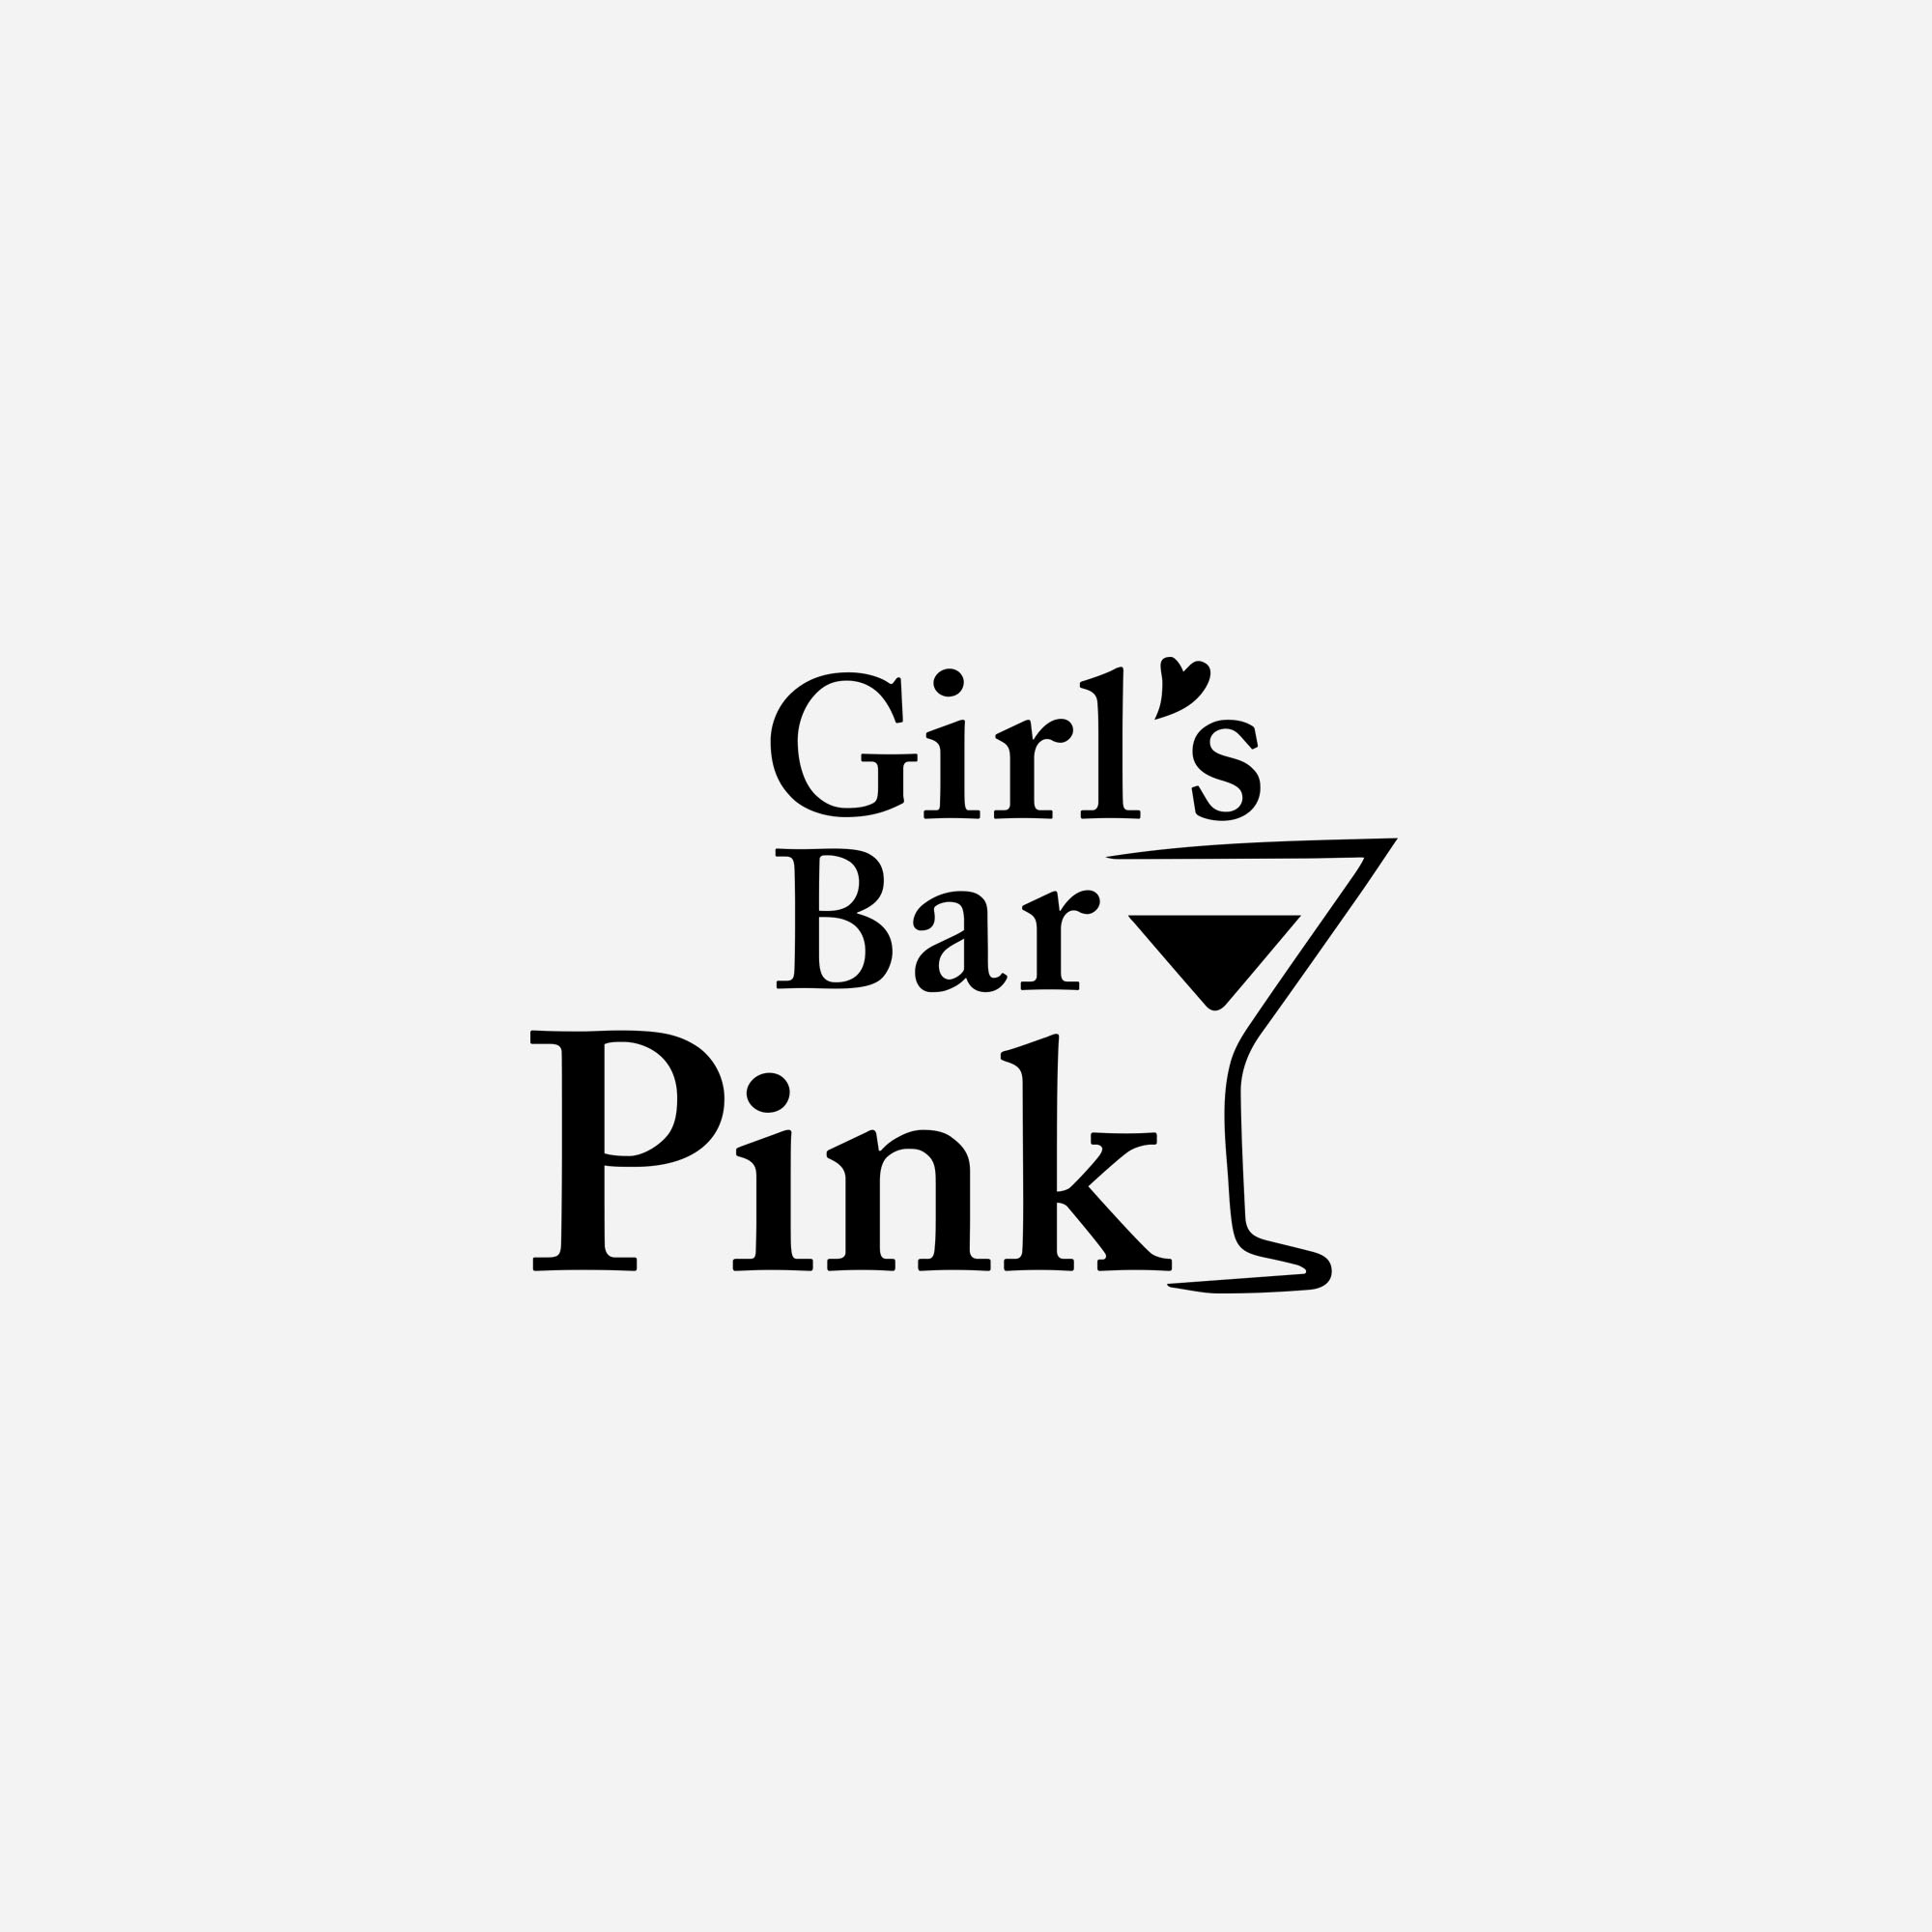 画像未登録時の代替え画像のGirl'sBar Pinkのロゴバナー